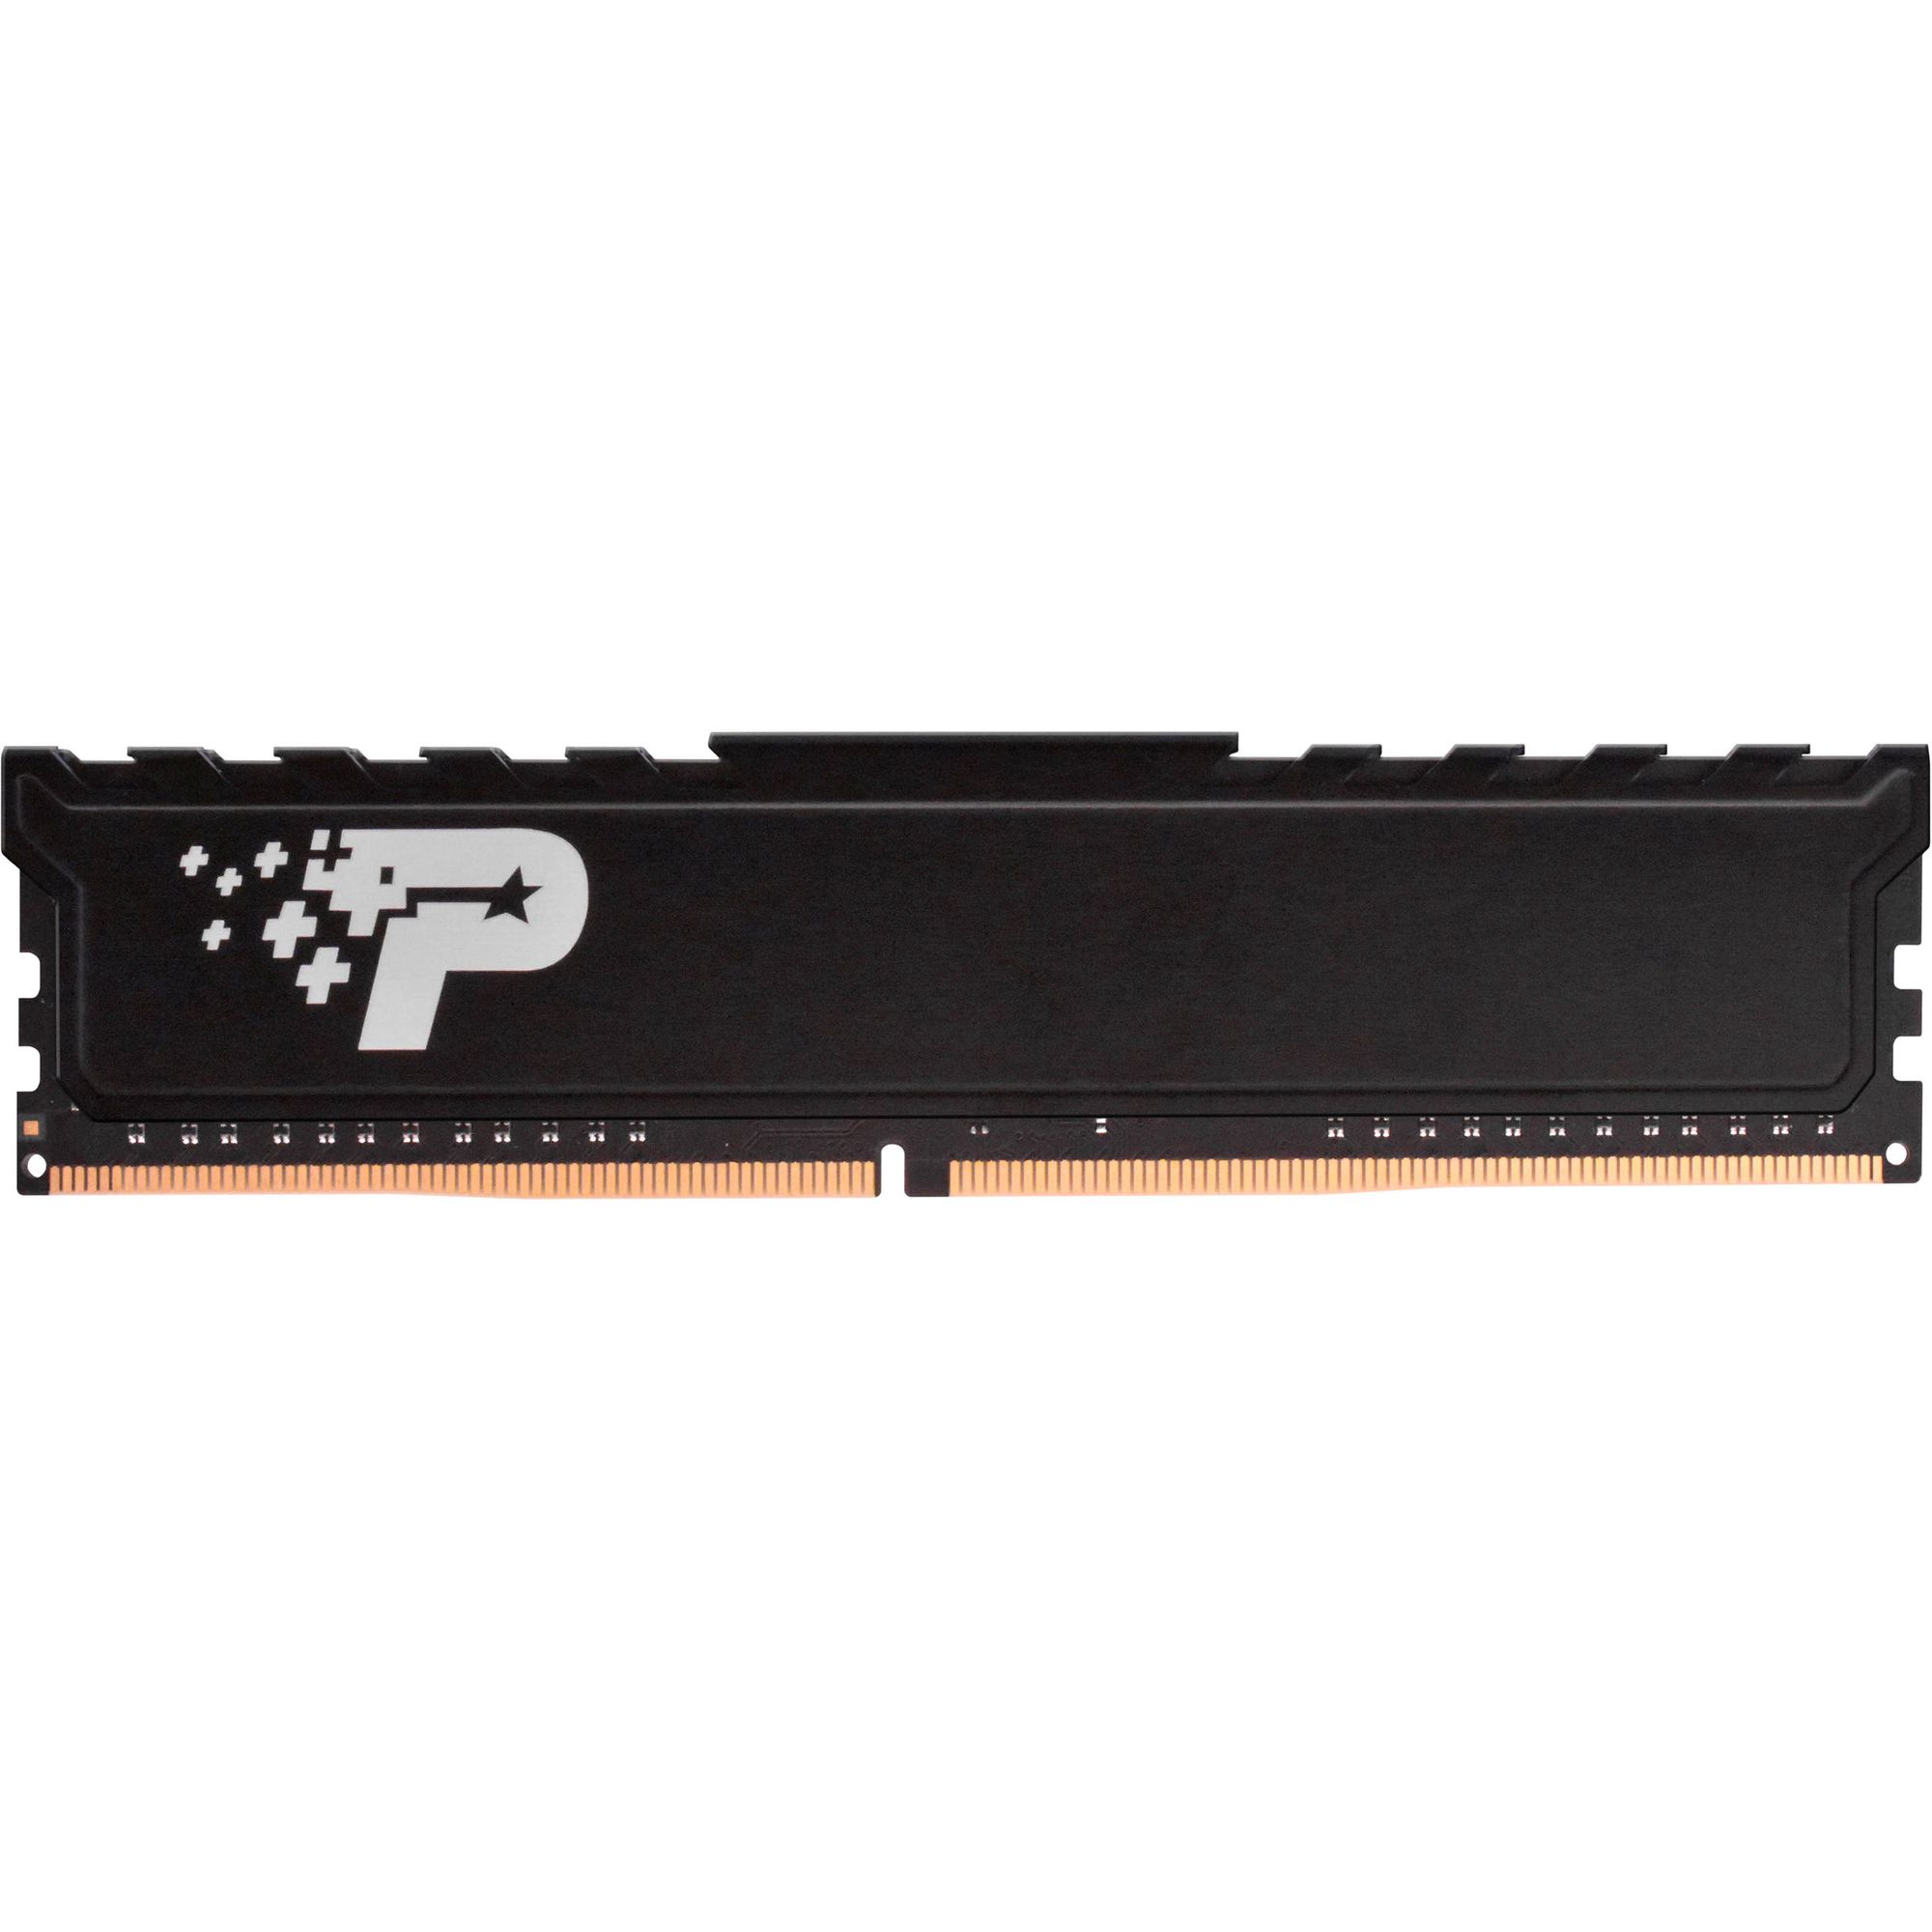 Память оперативная DDR4 Patriot Memory SL Premium 16Gb 2666MHz (PSP416G26662H1) память оперативная ddr4 patriot memory 16gb 3000mhz pvb416g300c6k